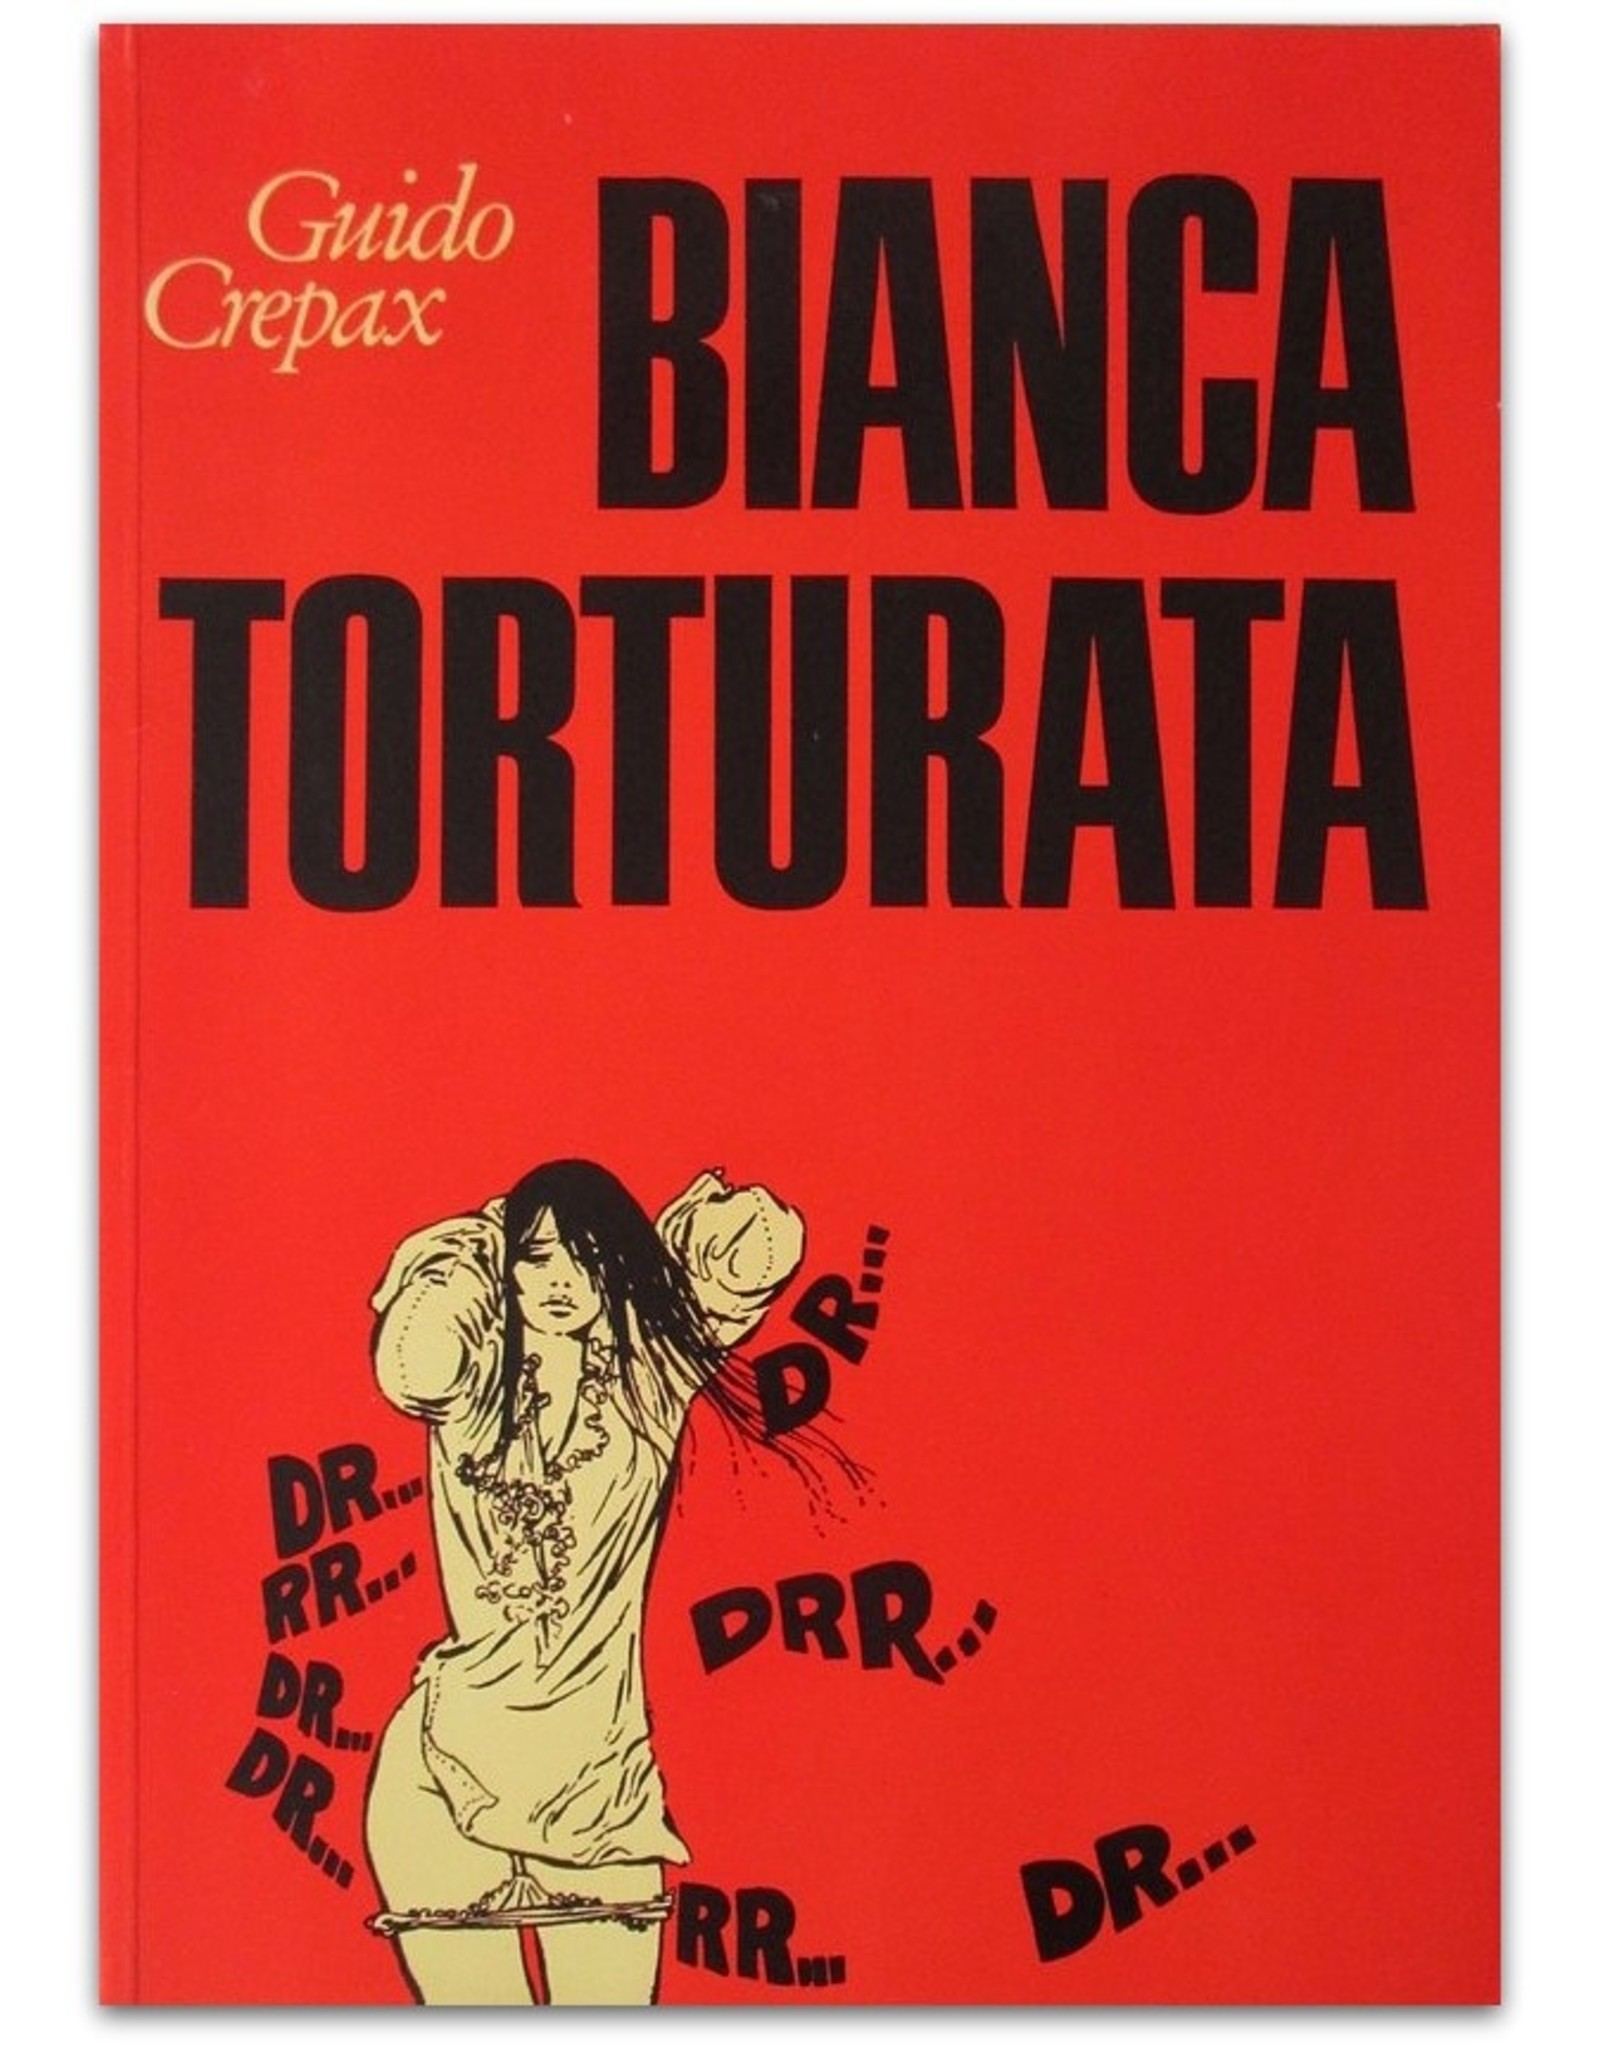 Guido Crepax - Bianca Torturata